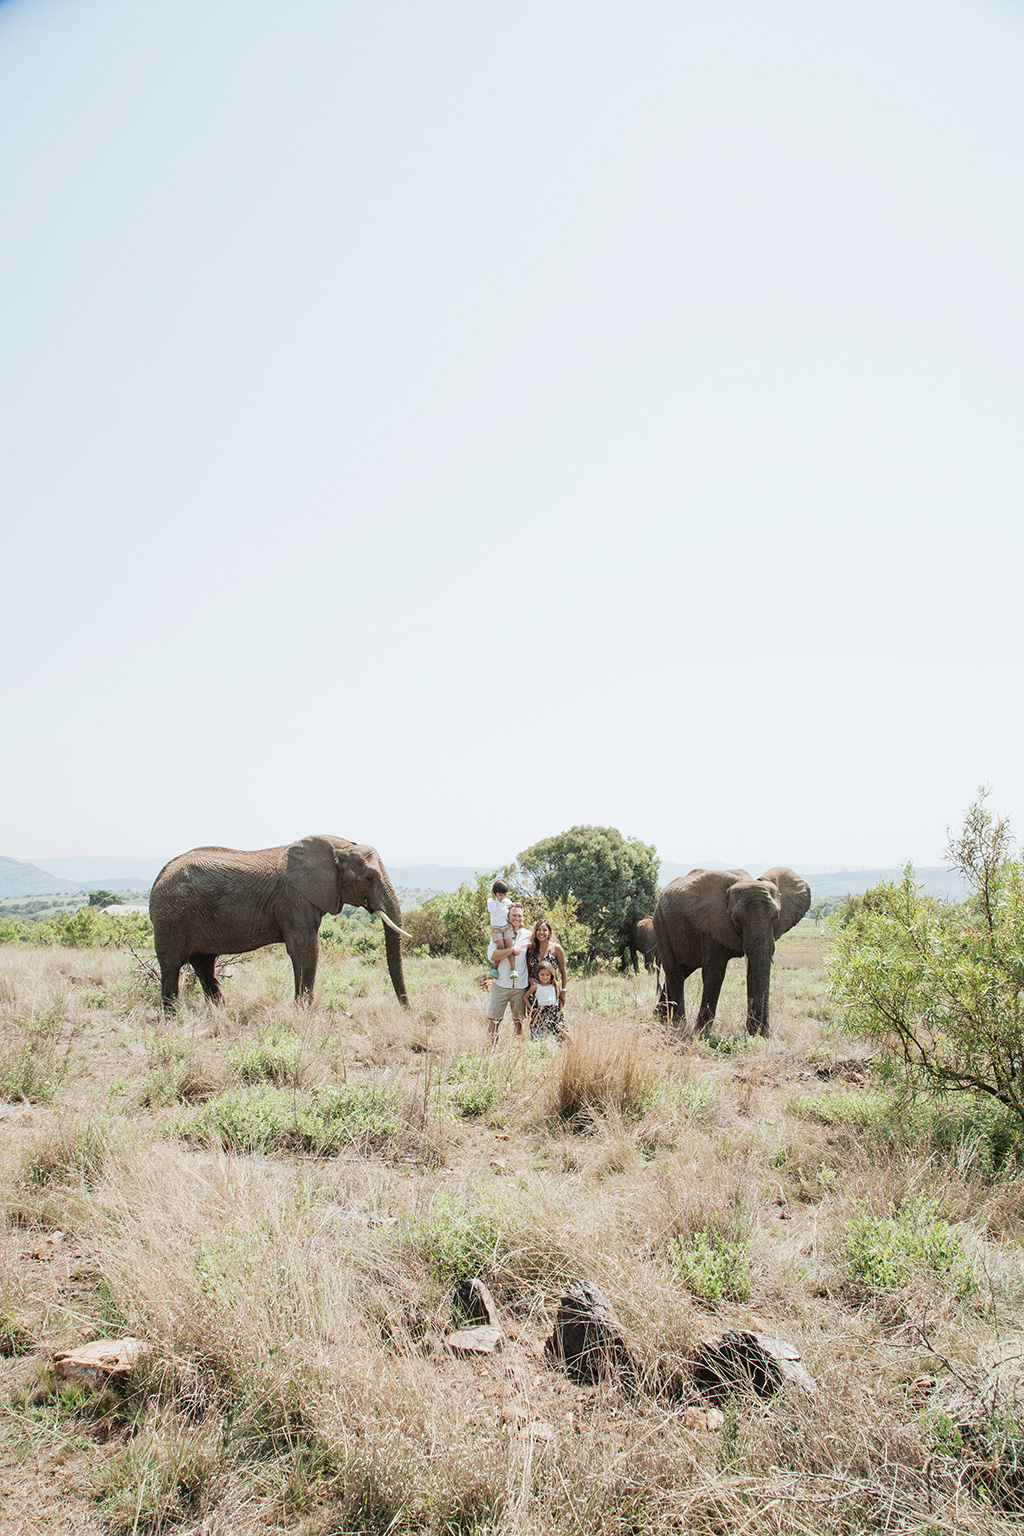 South Africa Elephant Photoshoot 14